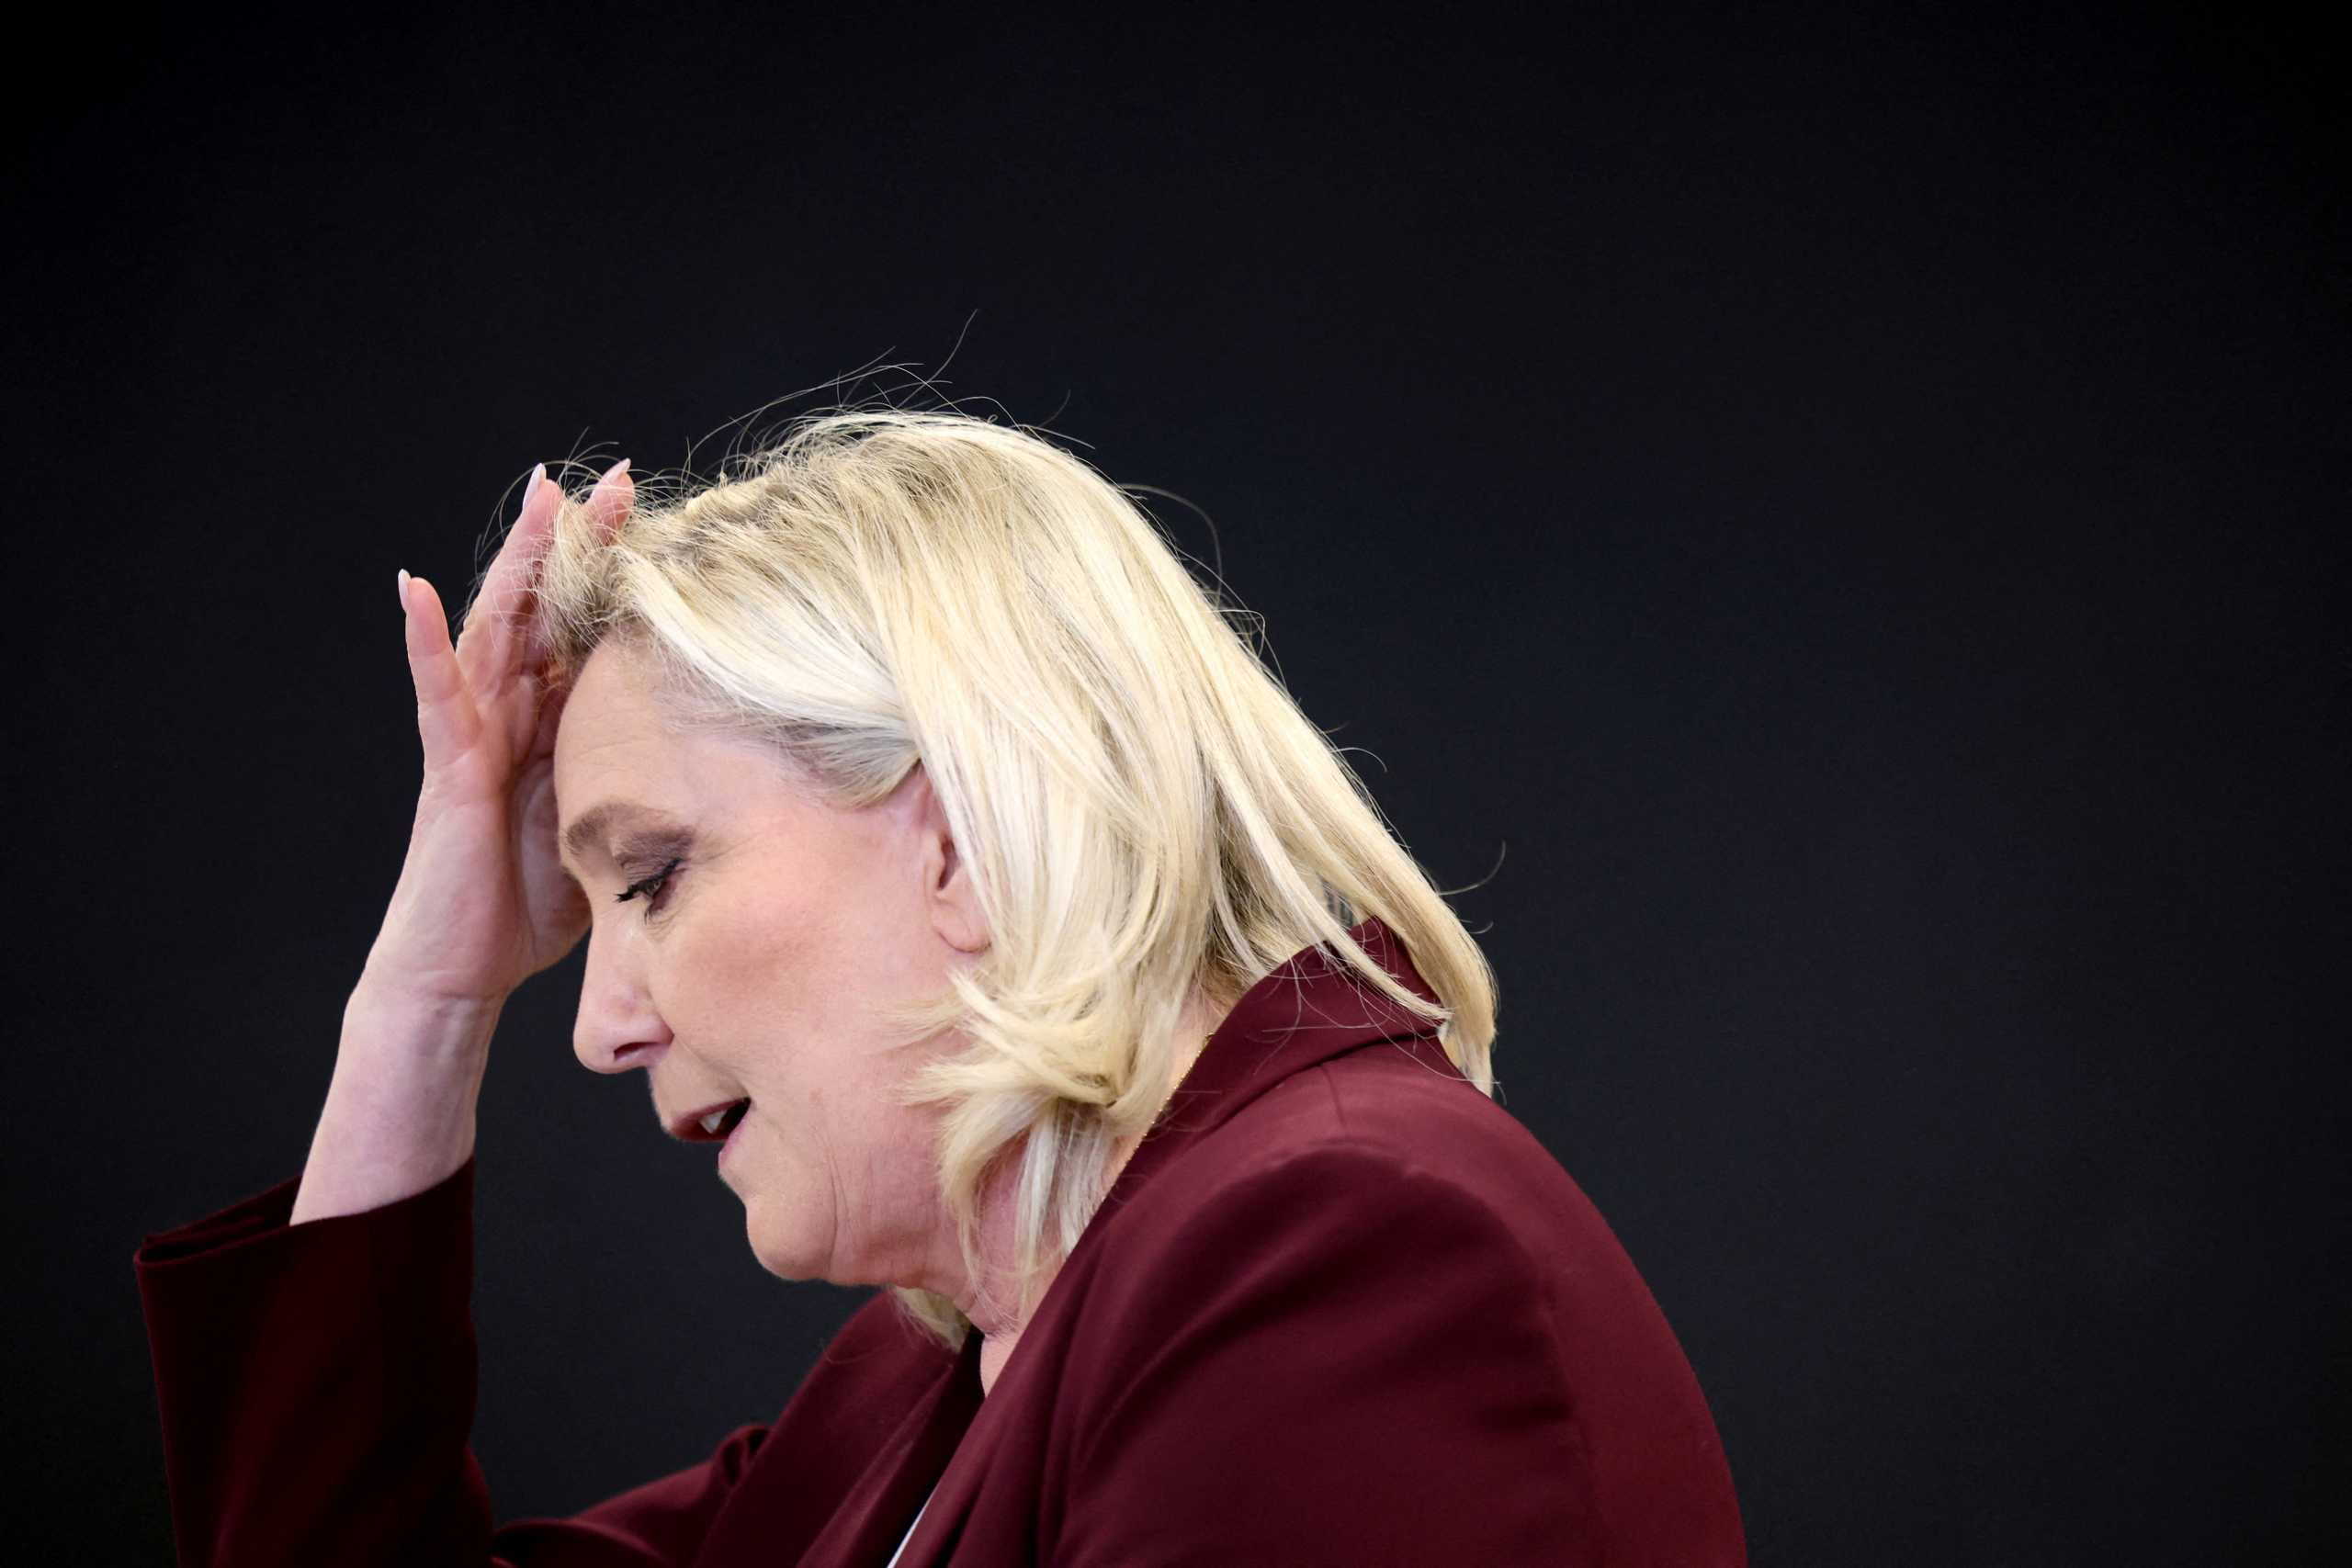 Γαλλικές Εκλογές: «Χαστούκι» στην Λε Πεν λίγες ώρες πριν το δεύτερο γύρο – Αποκαλύψεις για υπεξαίρεση 600.000 ευρώ